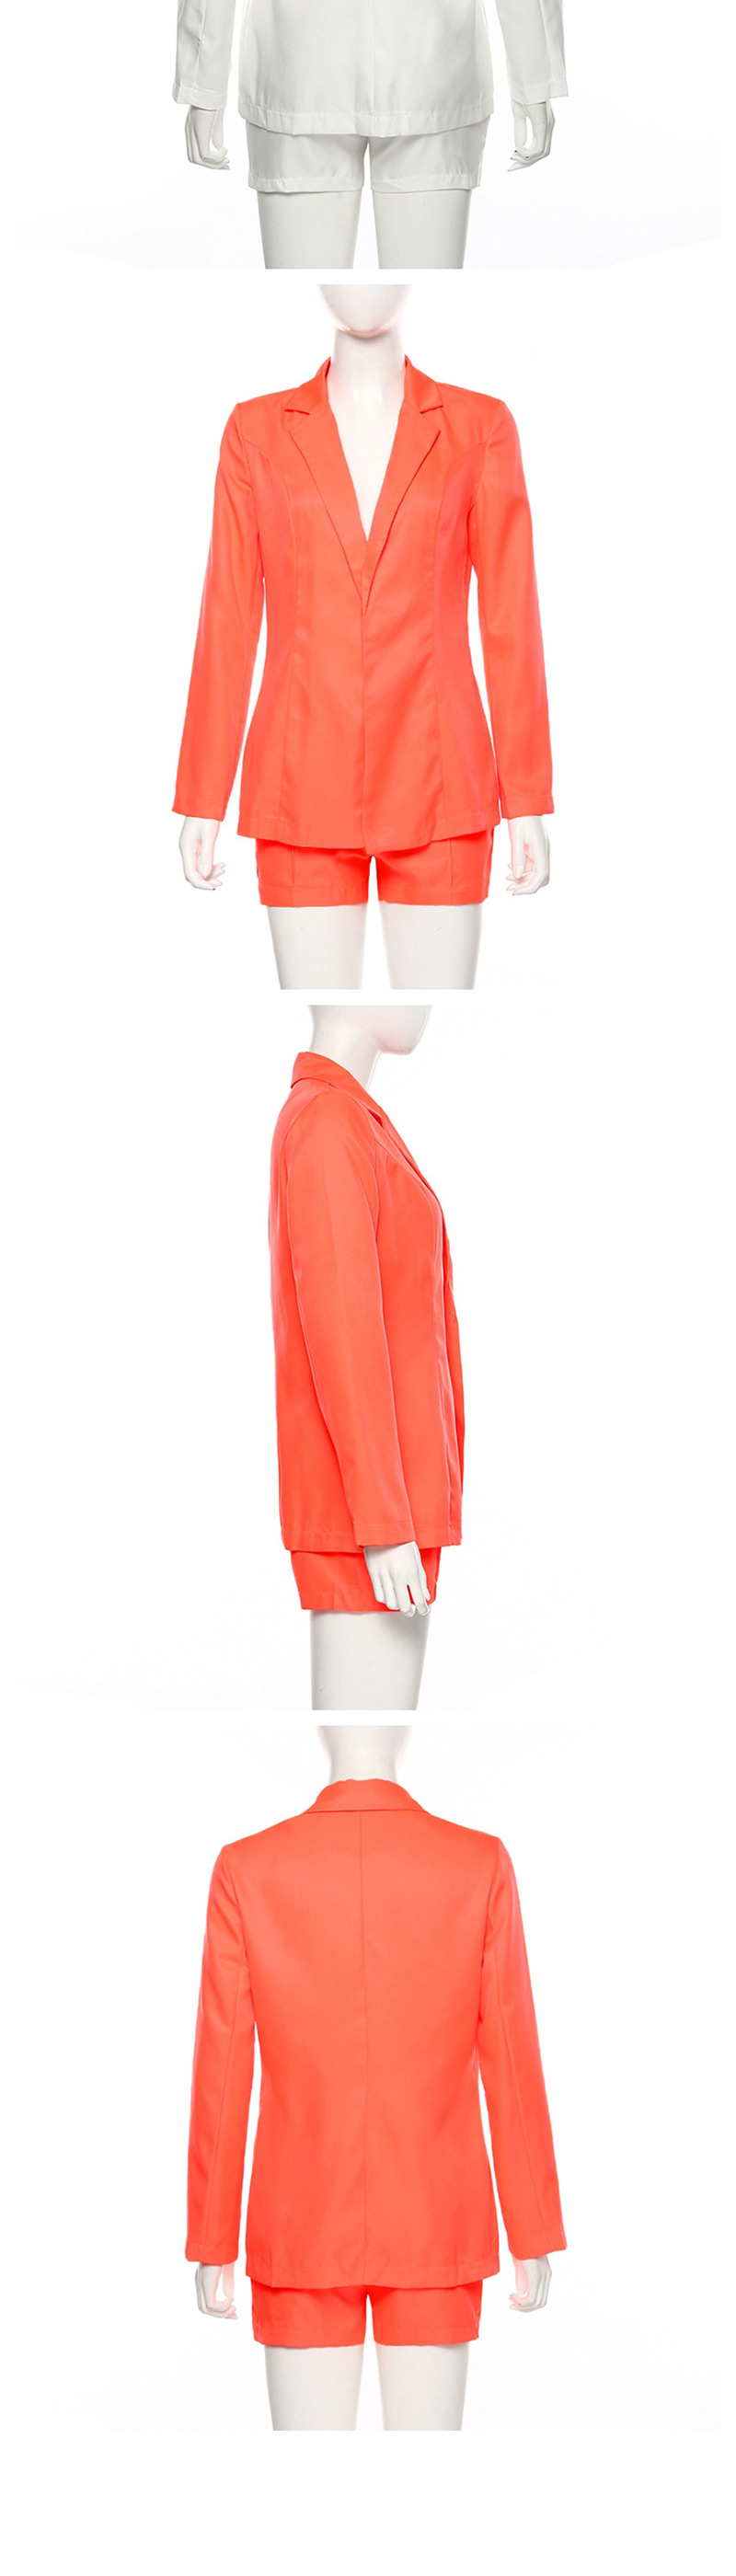 Fashion Orange Suit High Waist Shorts Suit,Coat-Jacket